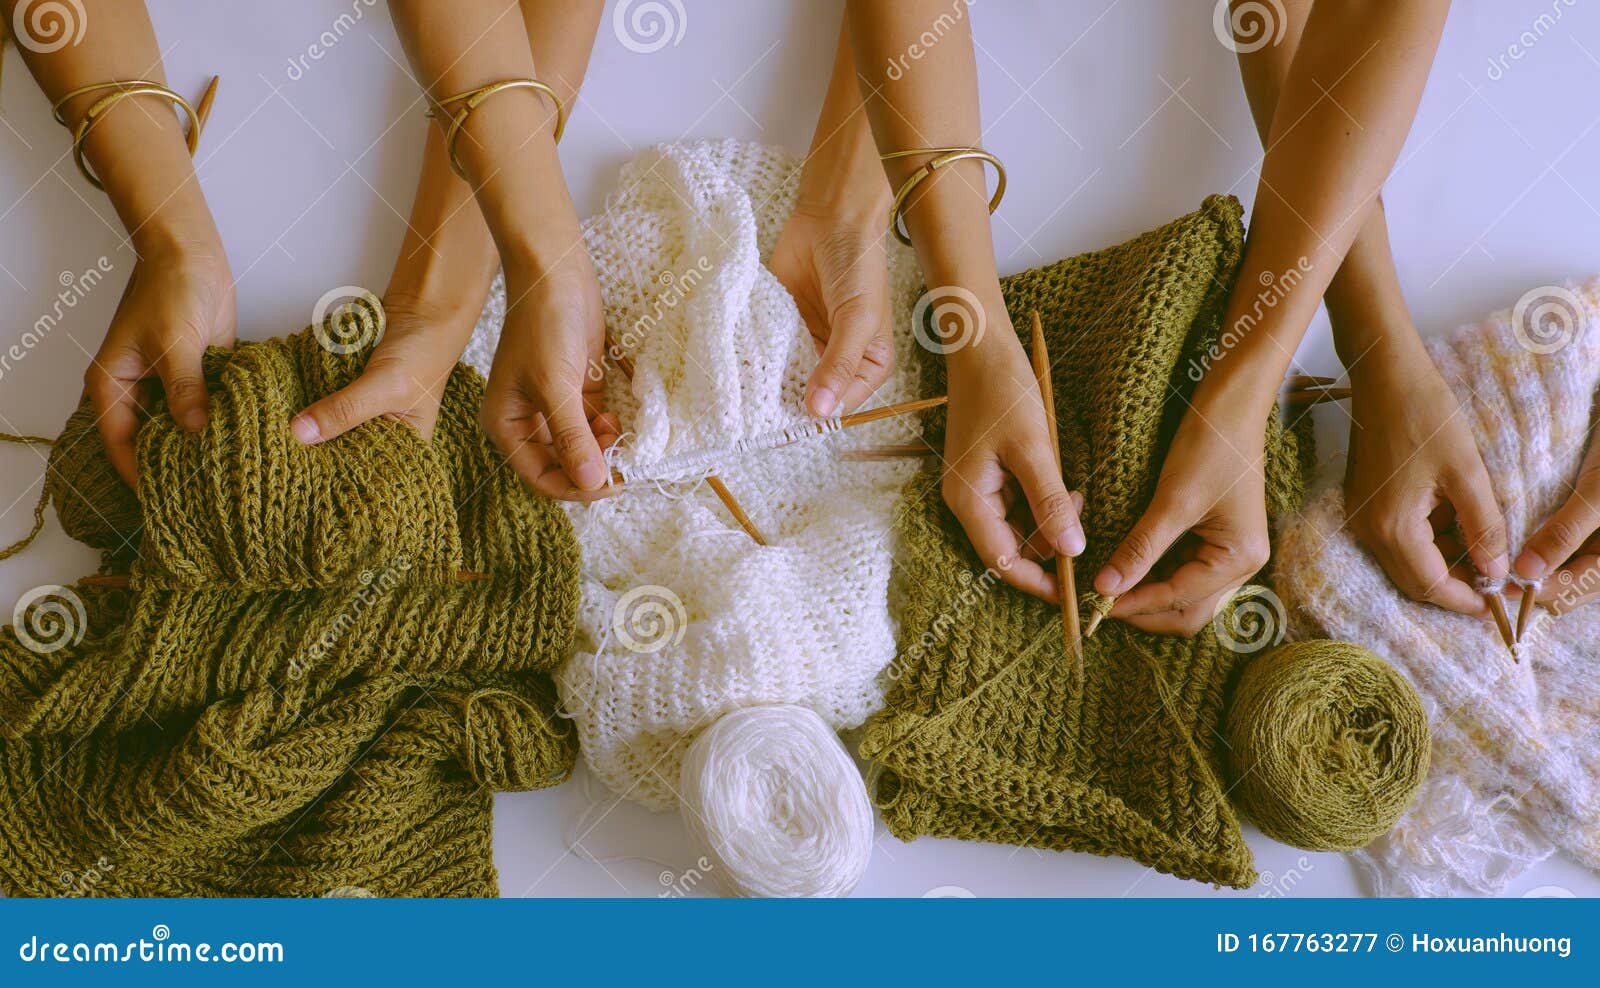 Wool, Needles, Hands